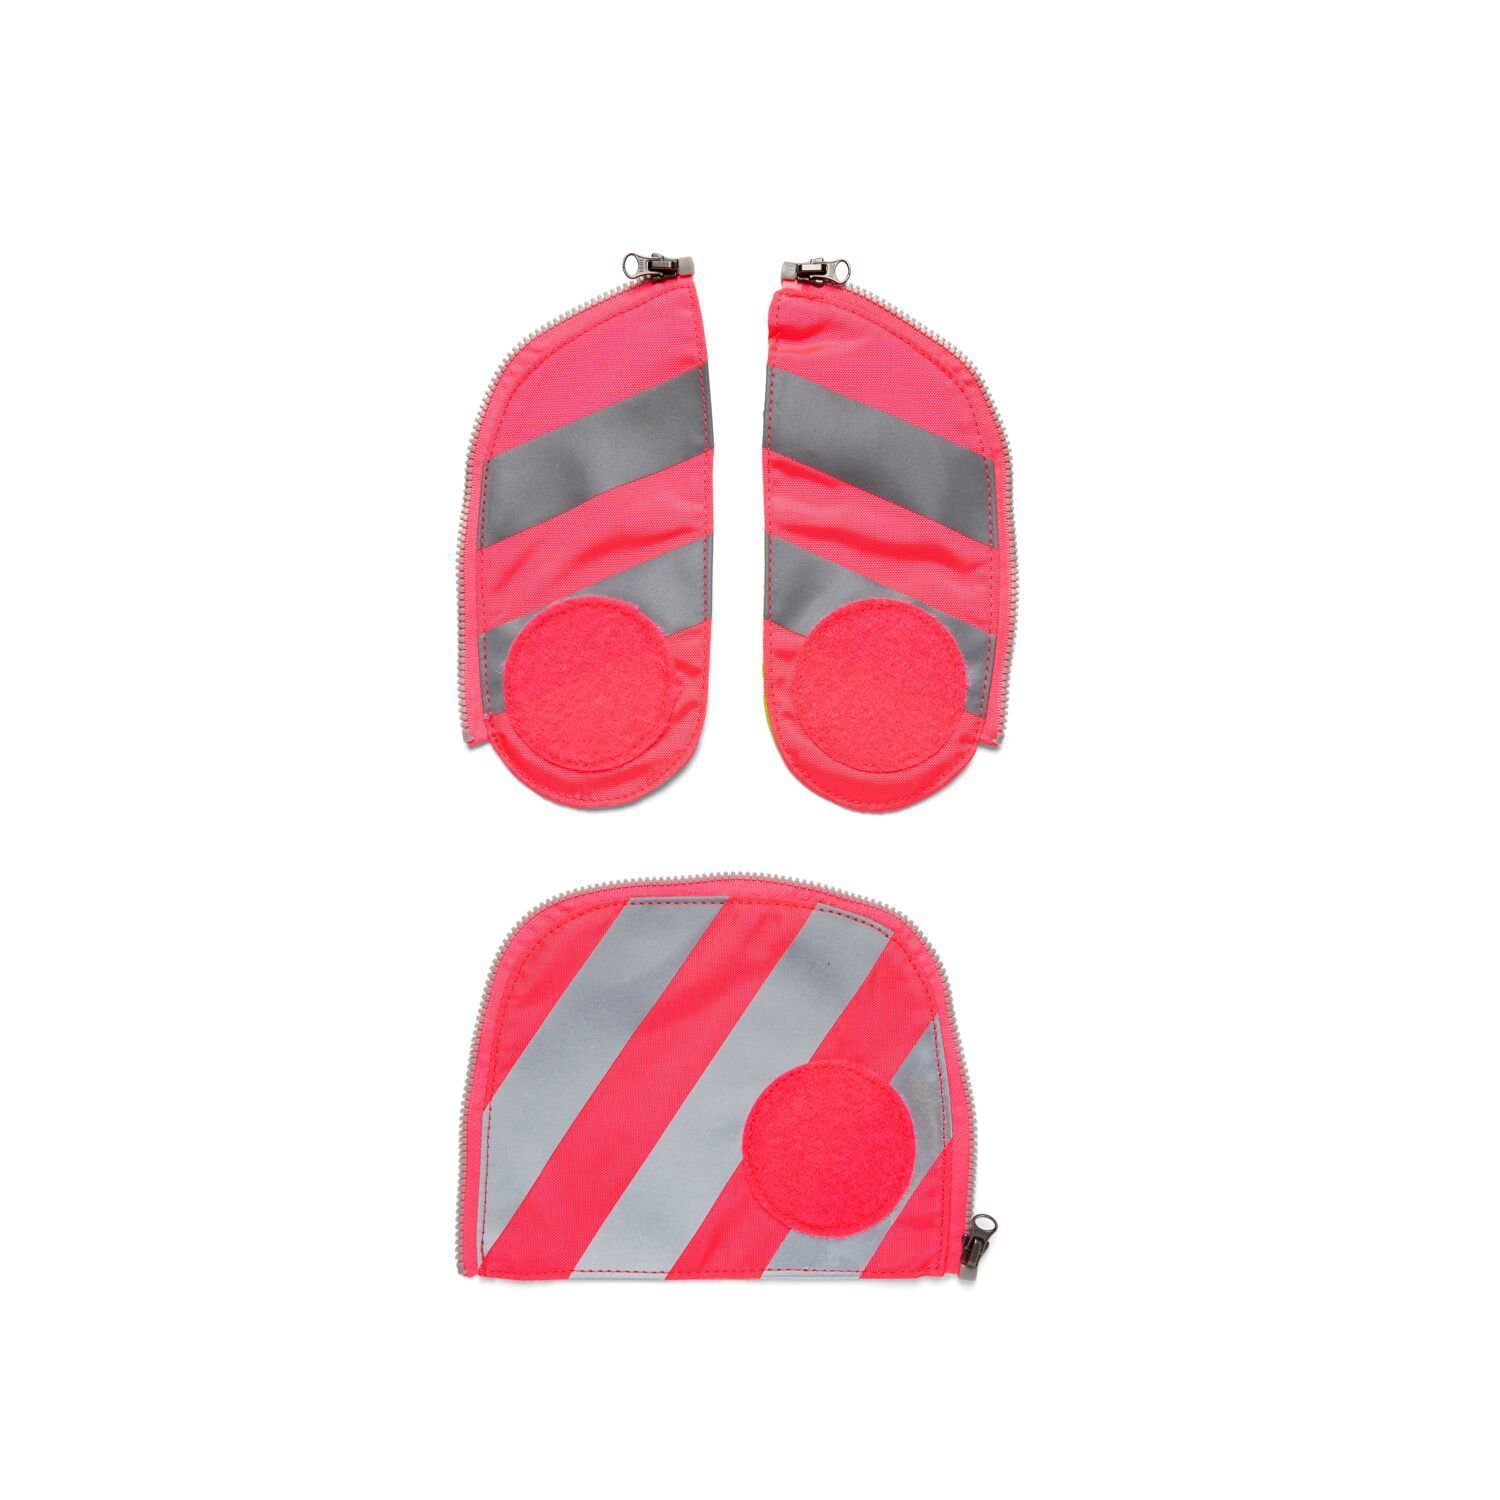 ergobag Schulranzen Fluo Zip-Set Pink 002-511 Sichtbarkeit Reflektorstreifen (3-teilig), mit Sicherheits-Set fluoreszierender Stoff, Pink